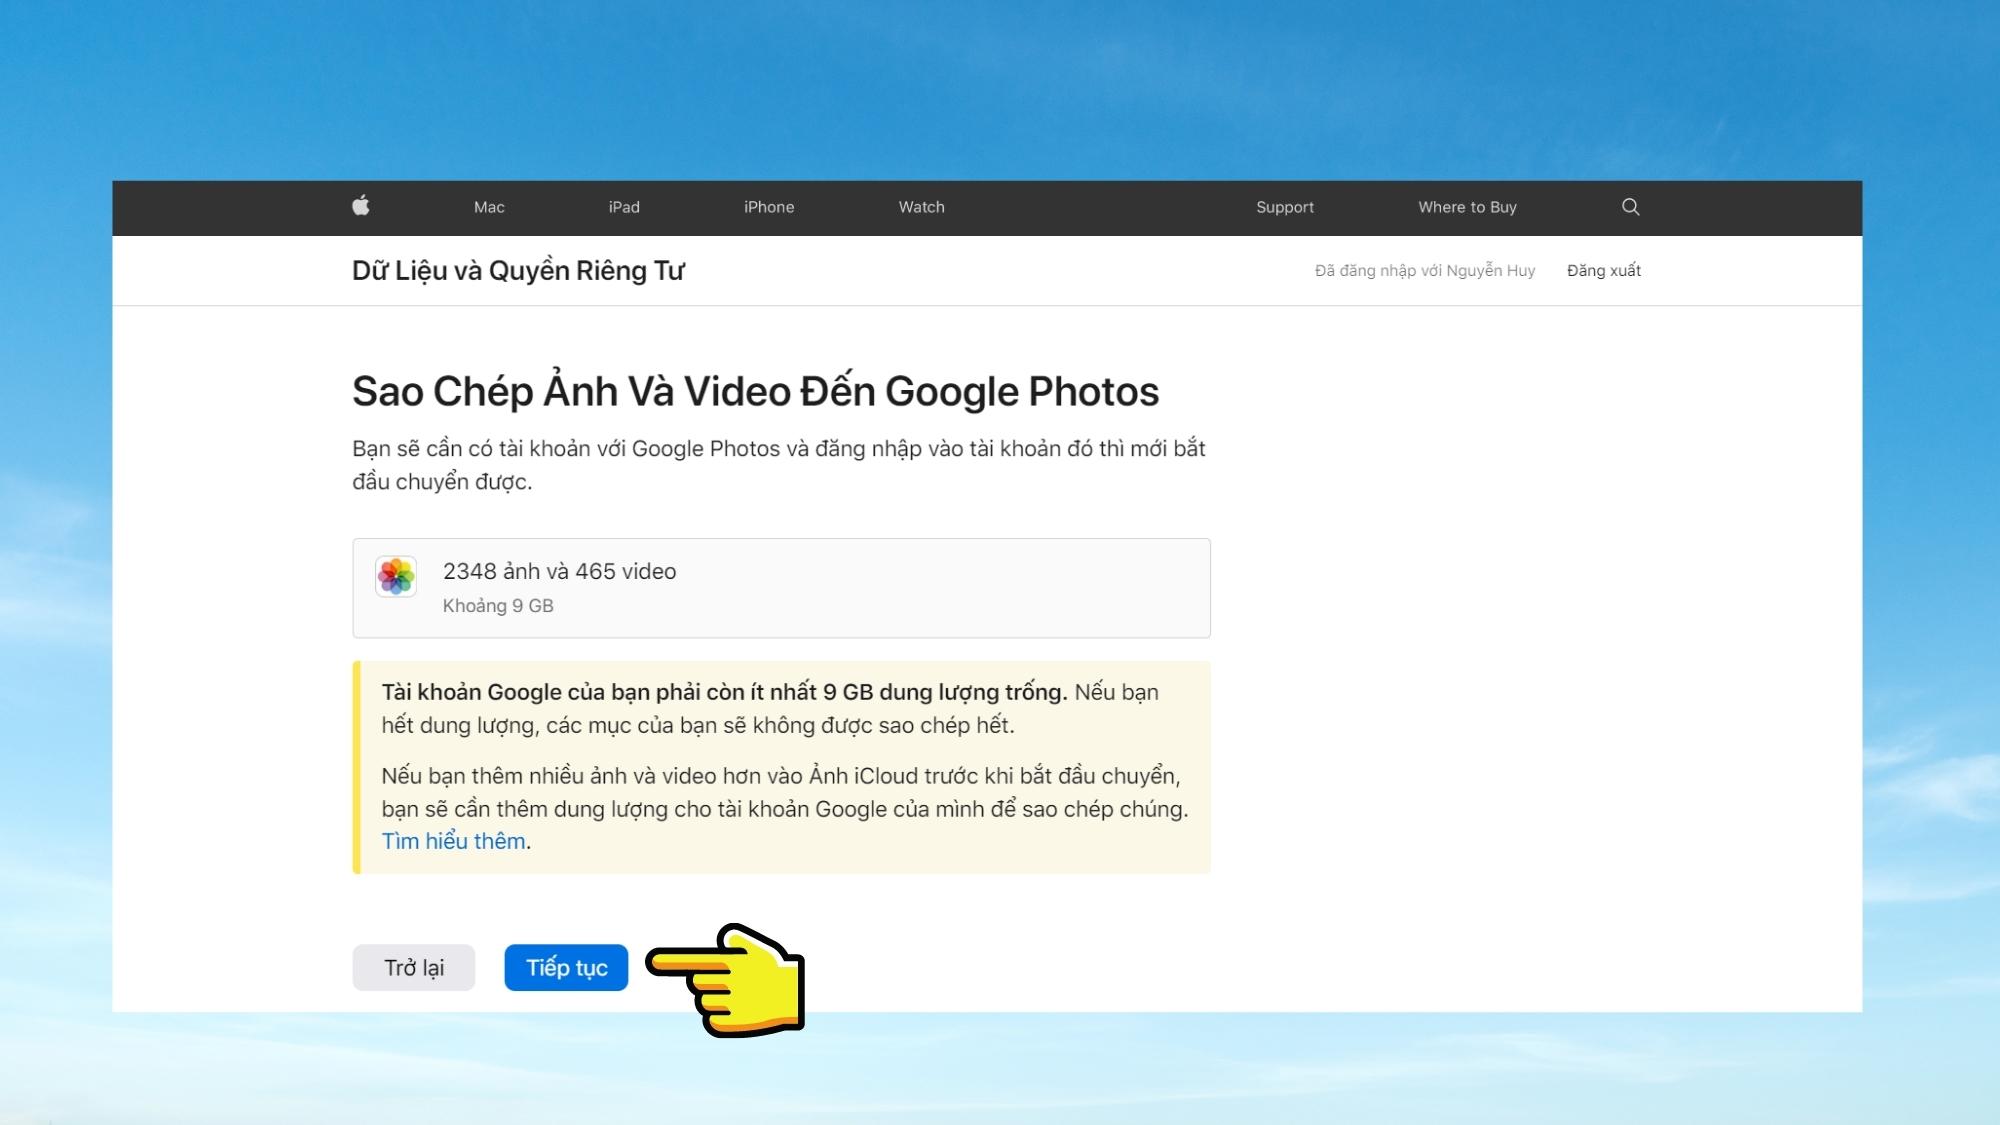 Hướng dẫn cách chuyển ảnh, video từ iCloud Photos sang Google Photos trong tích tắc - Bước 6